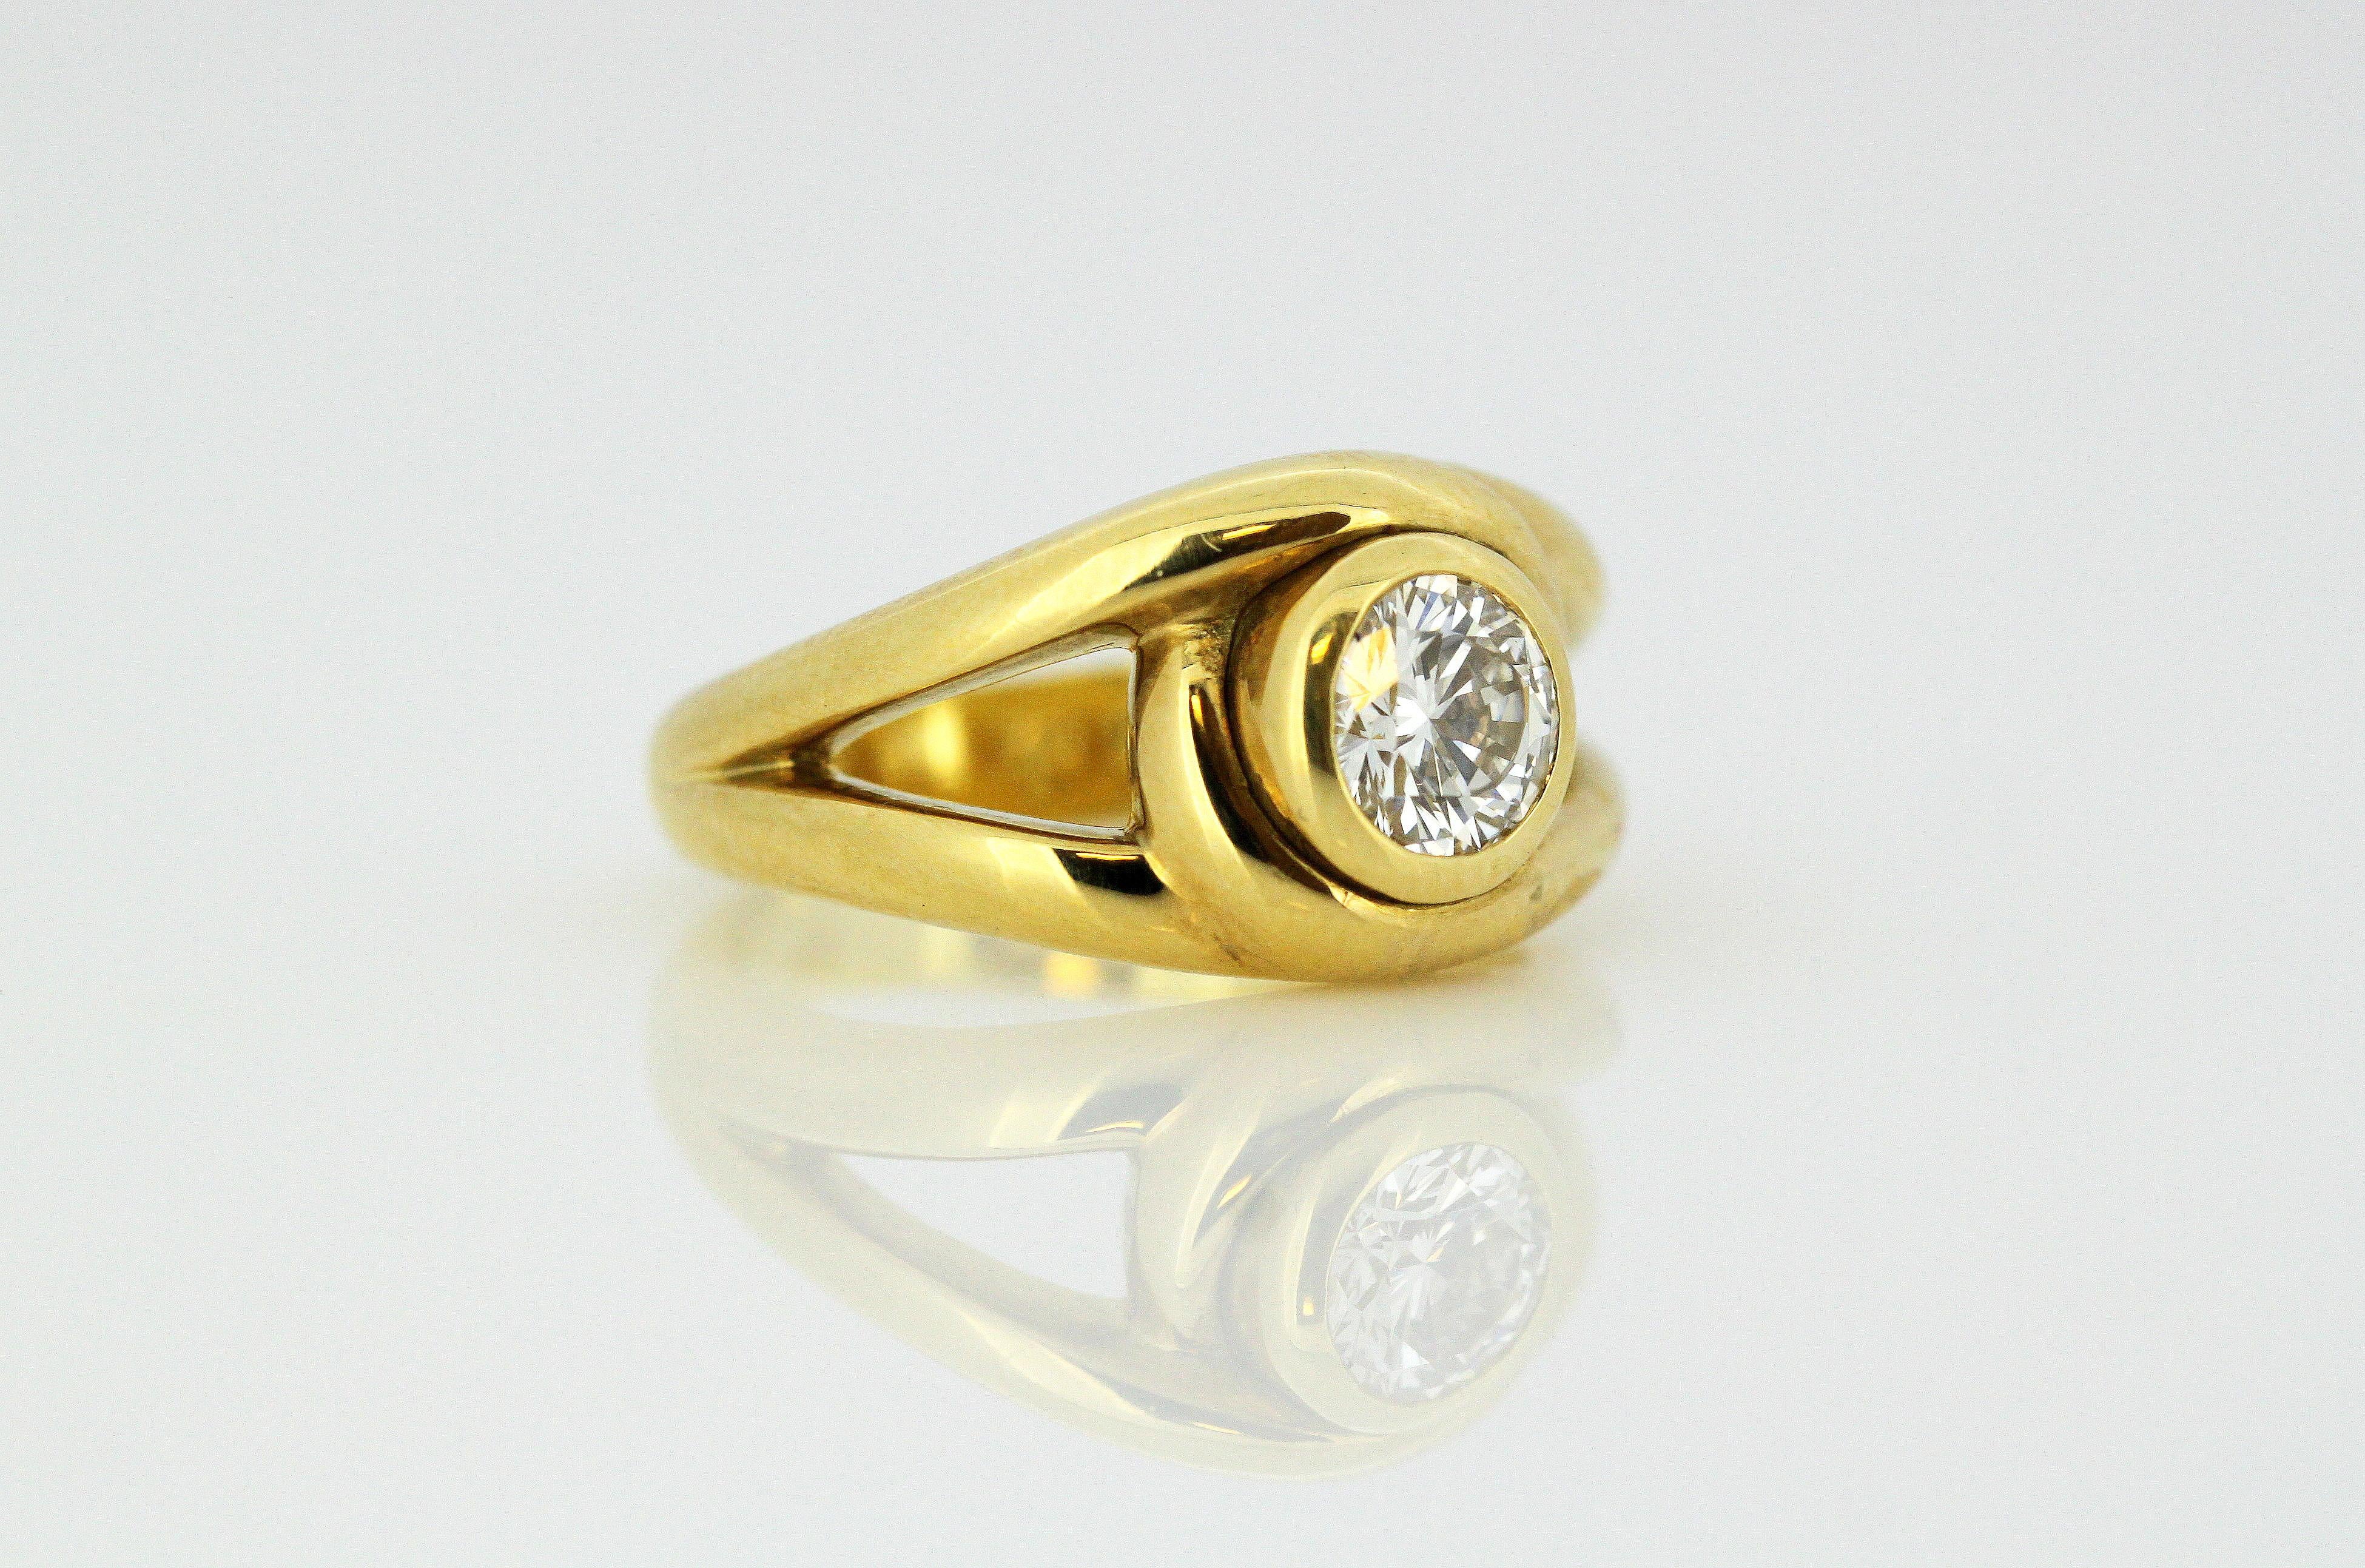 Cartier 18 Karat Gold Ladies Ring with 0.58 Carat Diamond, Cartier, Paris 3